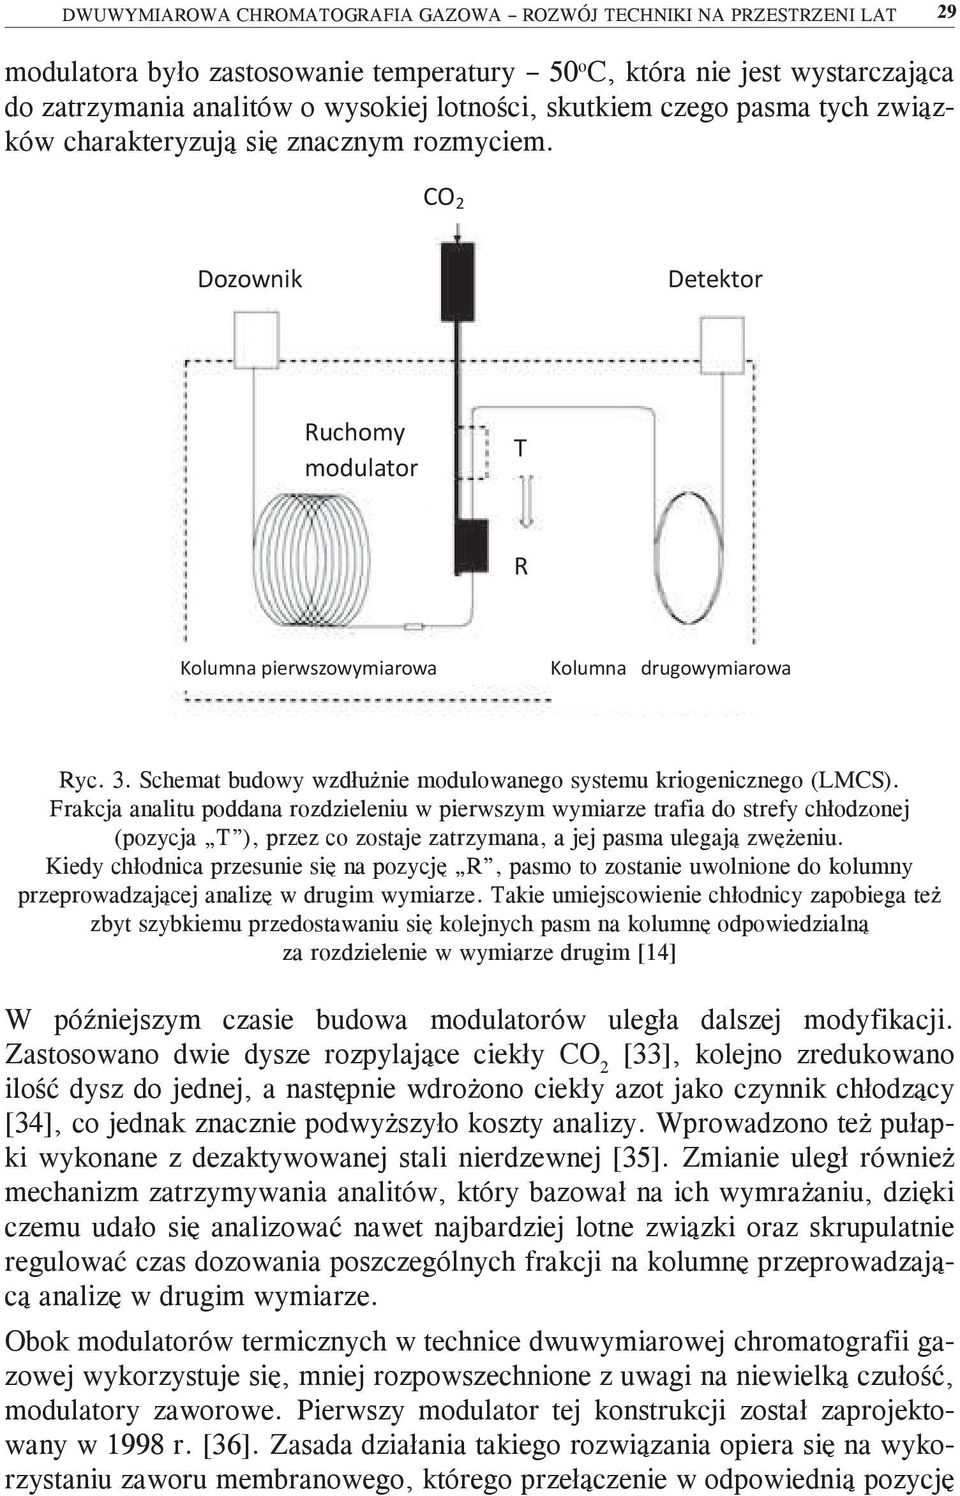 Schemat budowy wzdłużnie modulowanego systemu kriogenicznego (LMCS).